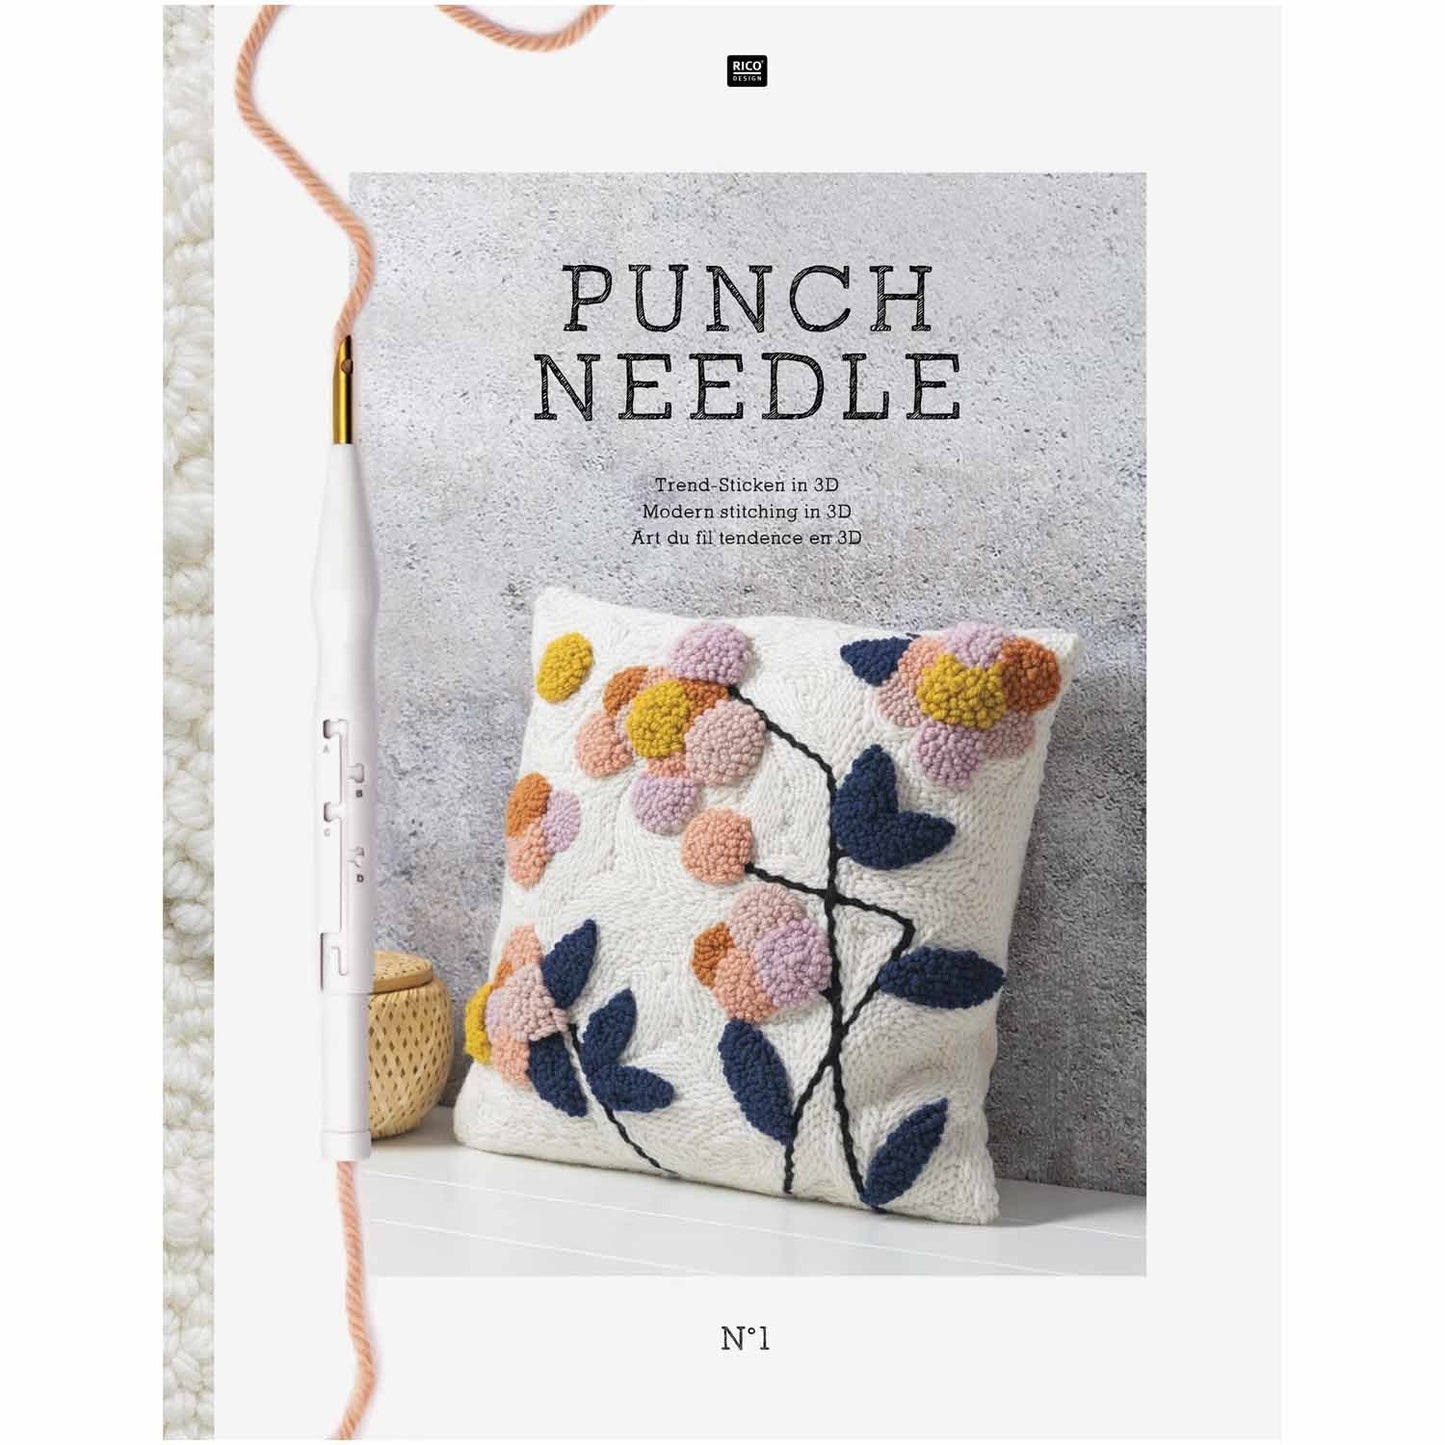 Punch Needle : la couture moderne en 3D par Rico